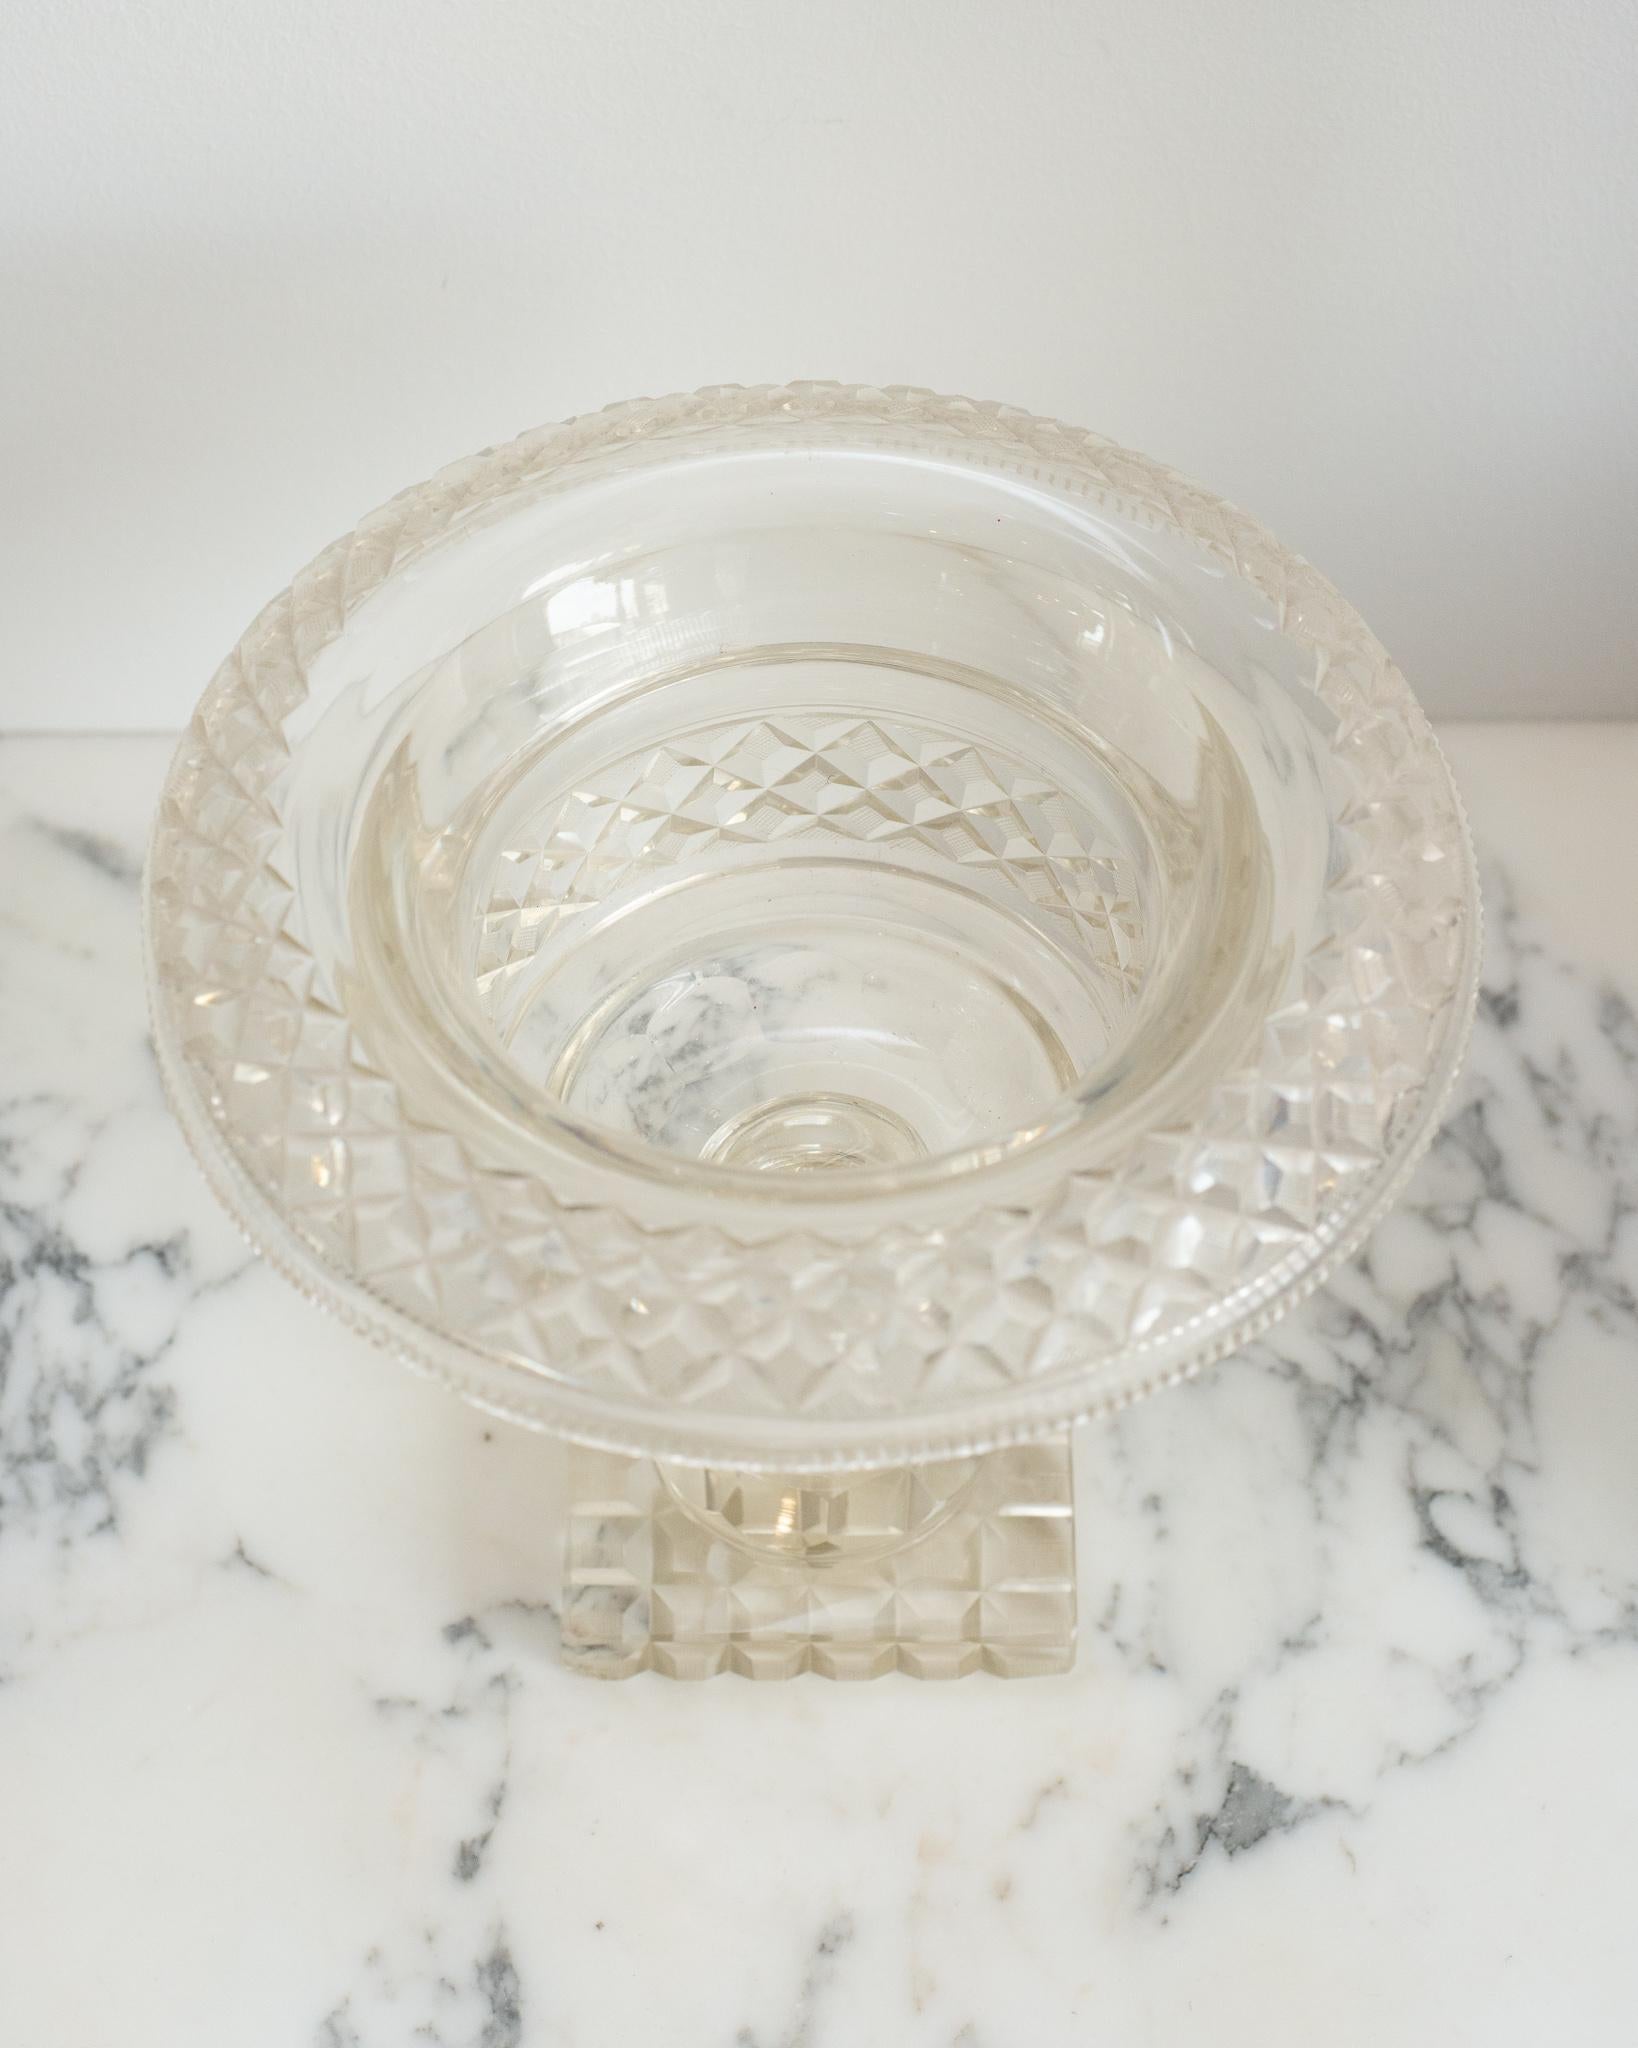 Ce bol décoratif en cristal taillé irlandais antique avec un bord roulé est un accessoire classique facile à placer dans n'importe quelle maison. Parfait pour servir ou décorer, il peut être rempli de fruits ou de fleurs flottantes.